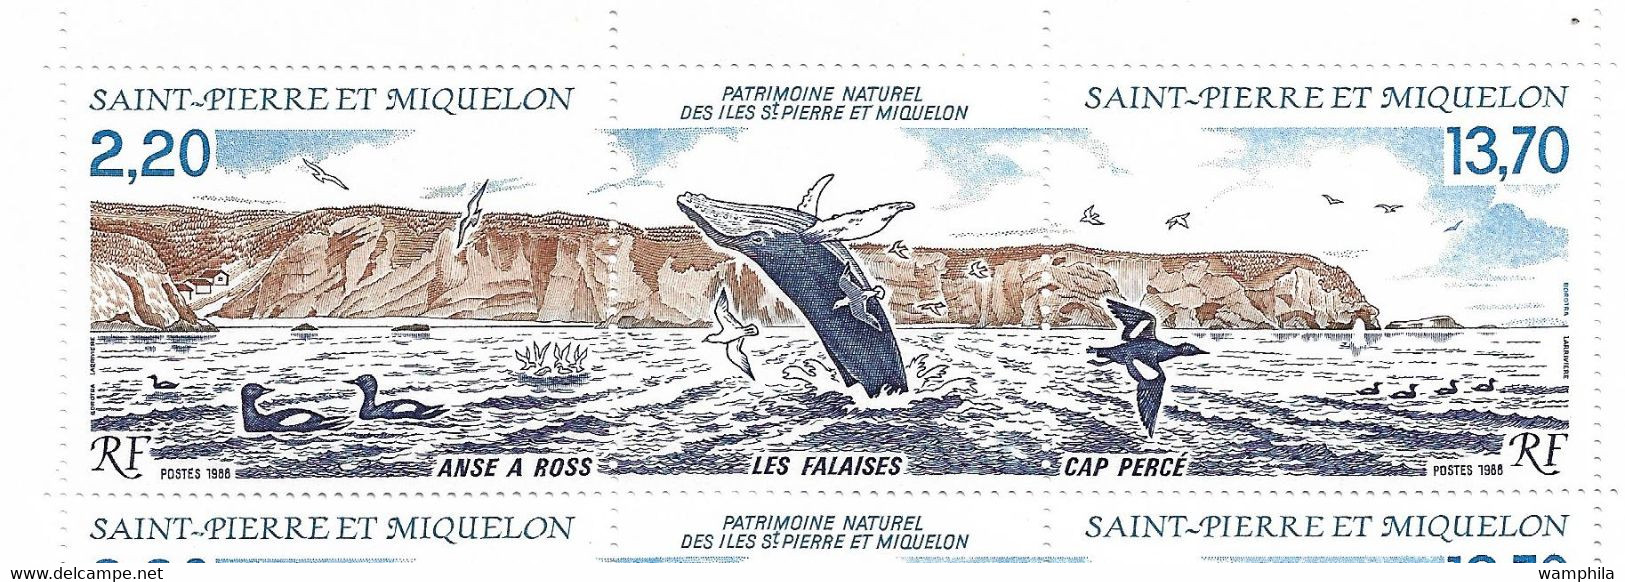 Saint-Pierre et Miquelon (N°487A, 2 feuilles),(492 et 494/495 par 1 feuille) cote 139€